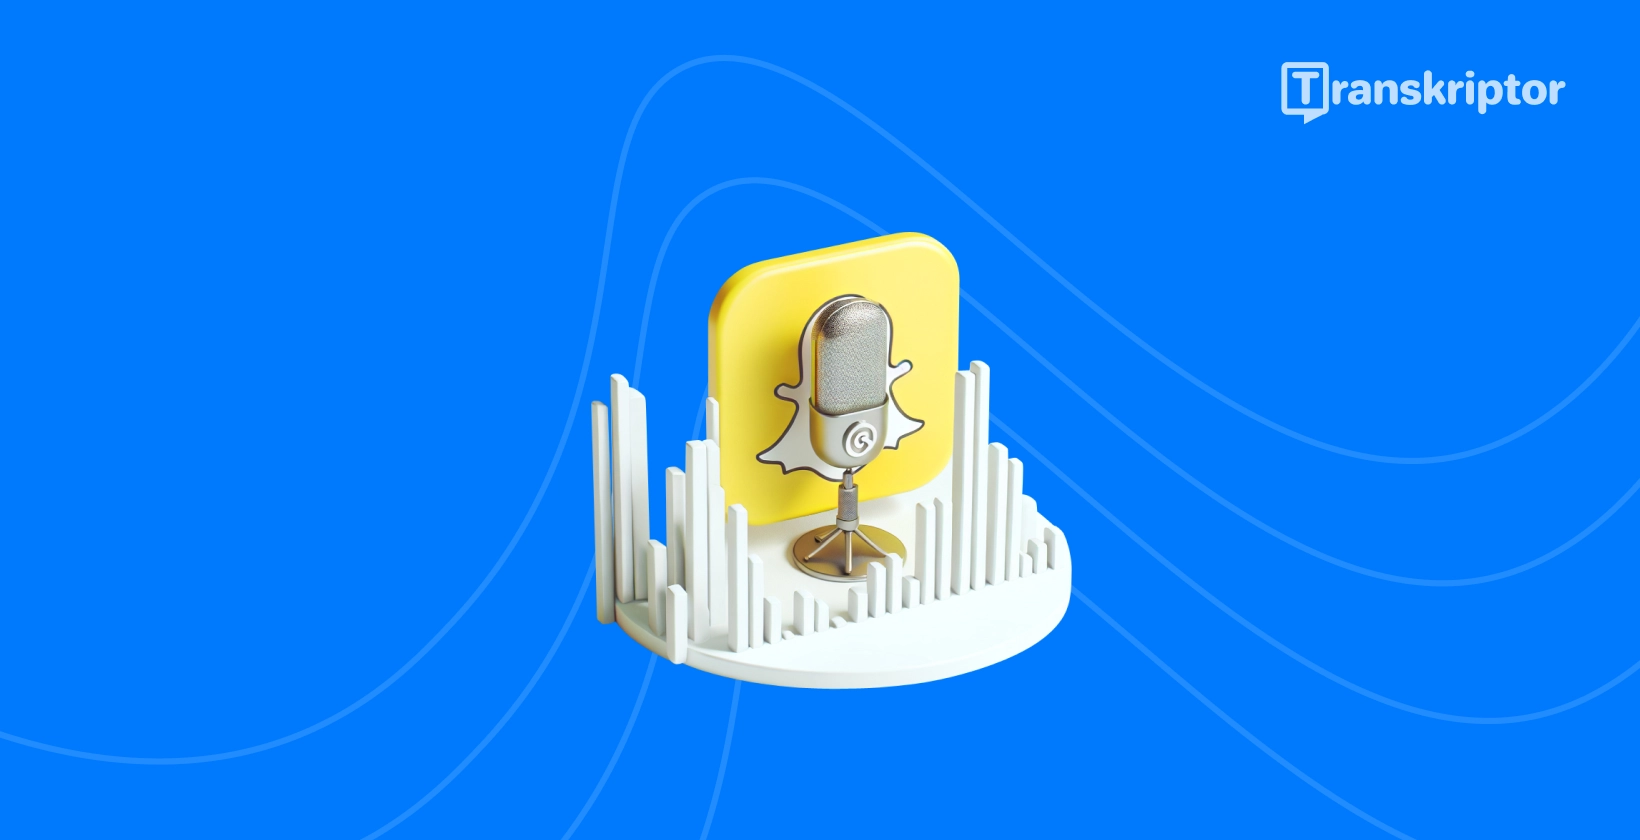 Transkriptor의 오디오 전사 가이드를 상징하는 Snapchat 유령 및 마이크 아이콘.